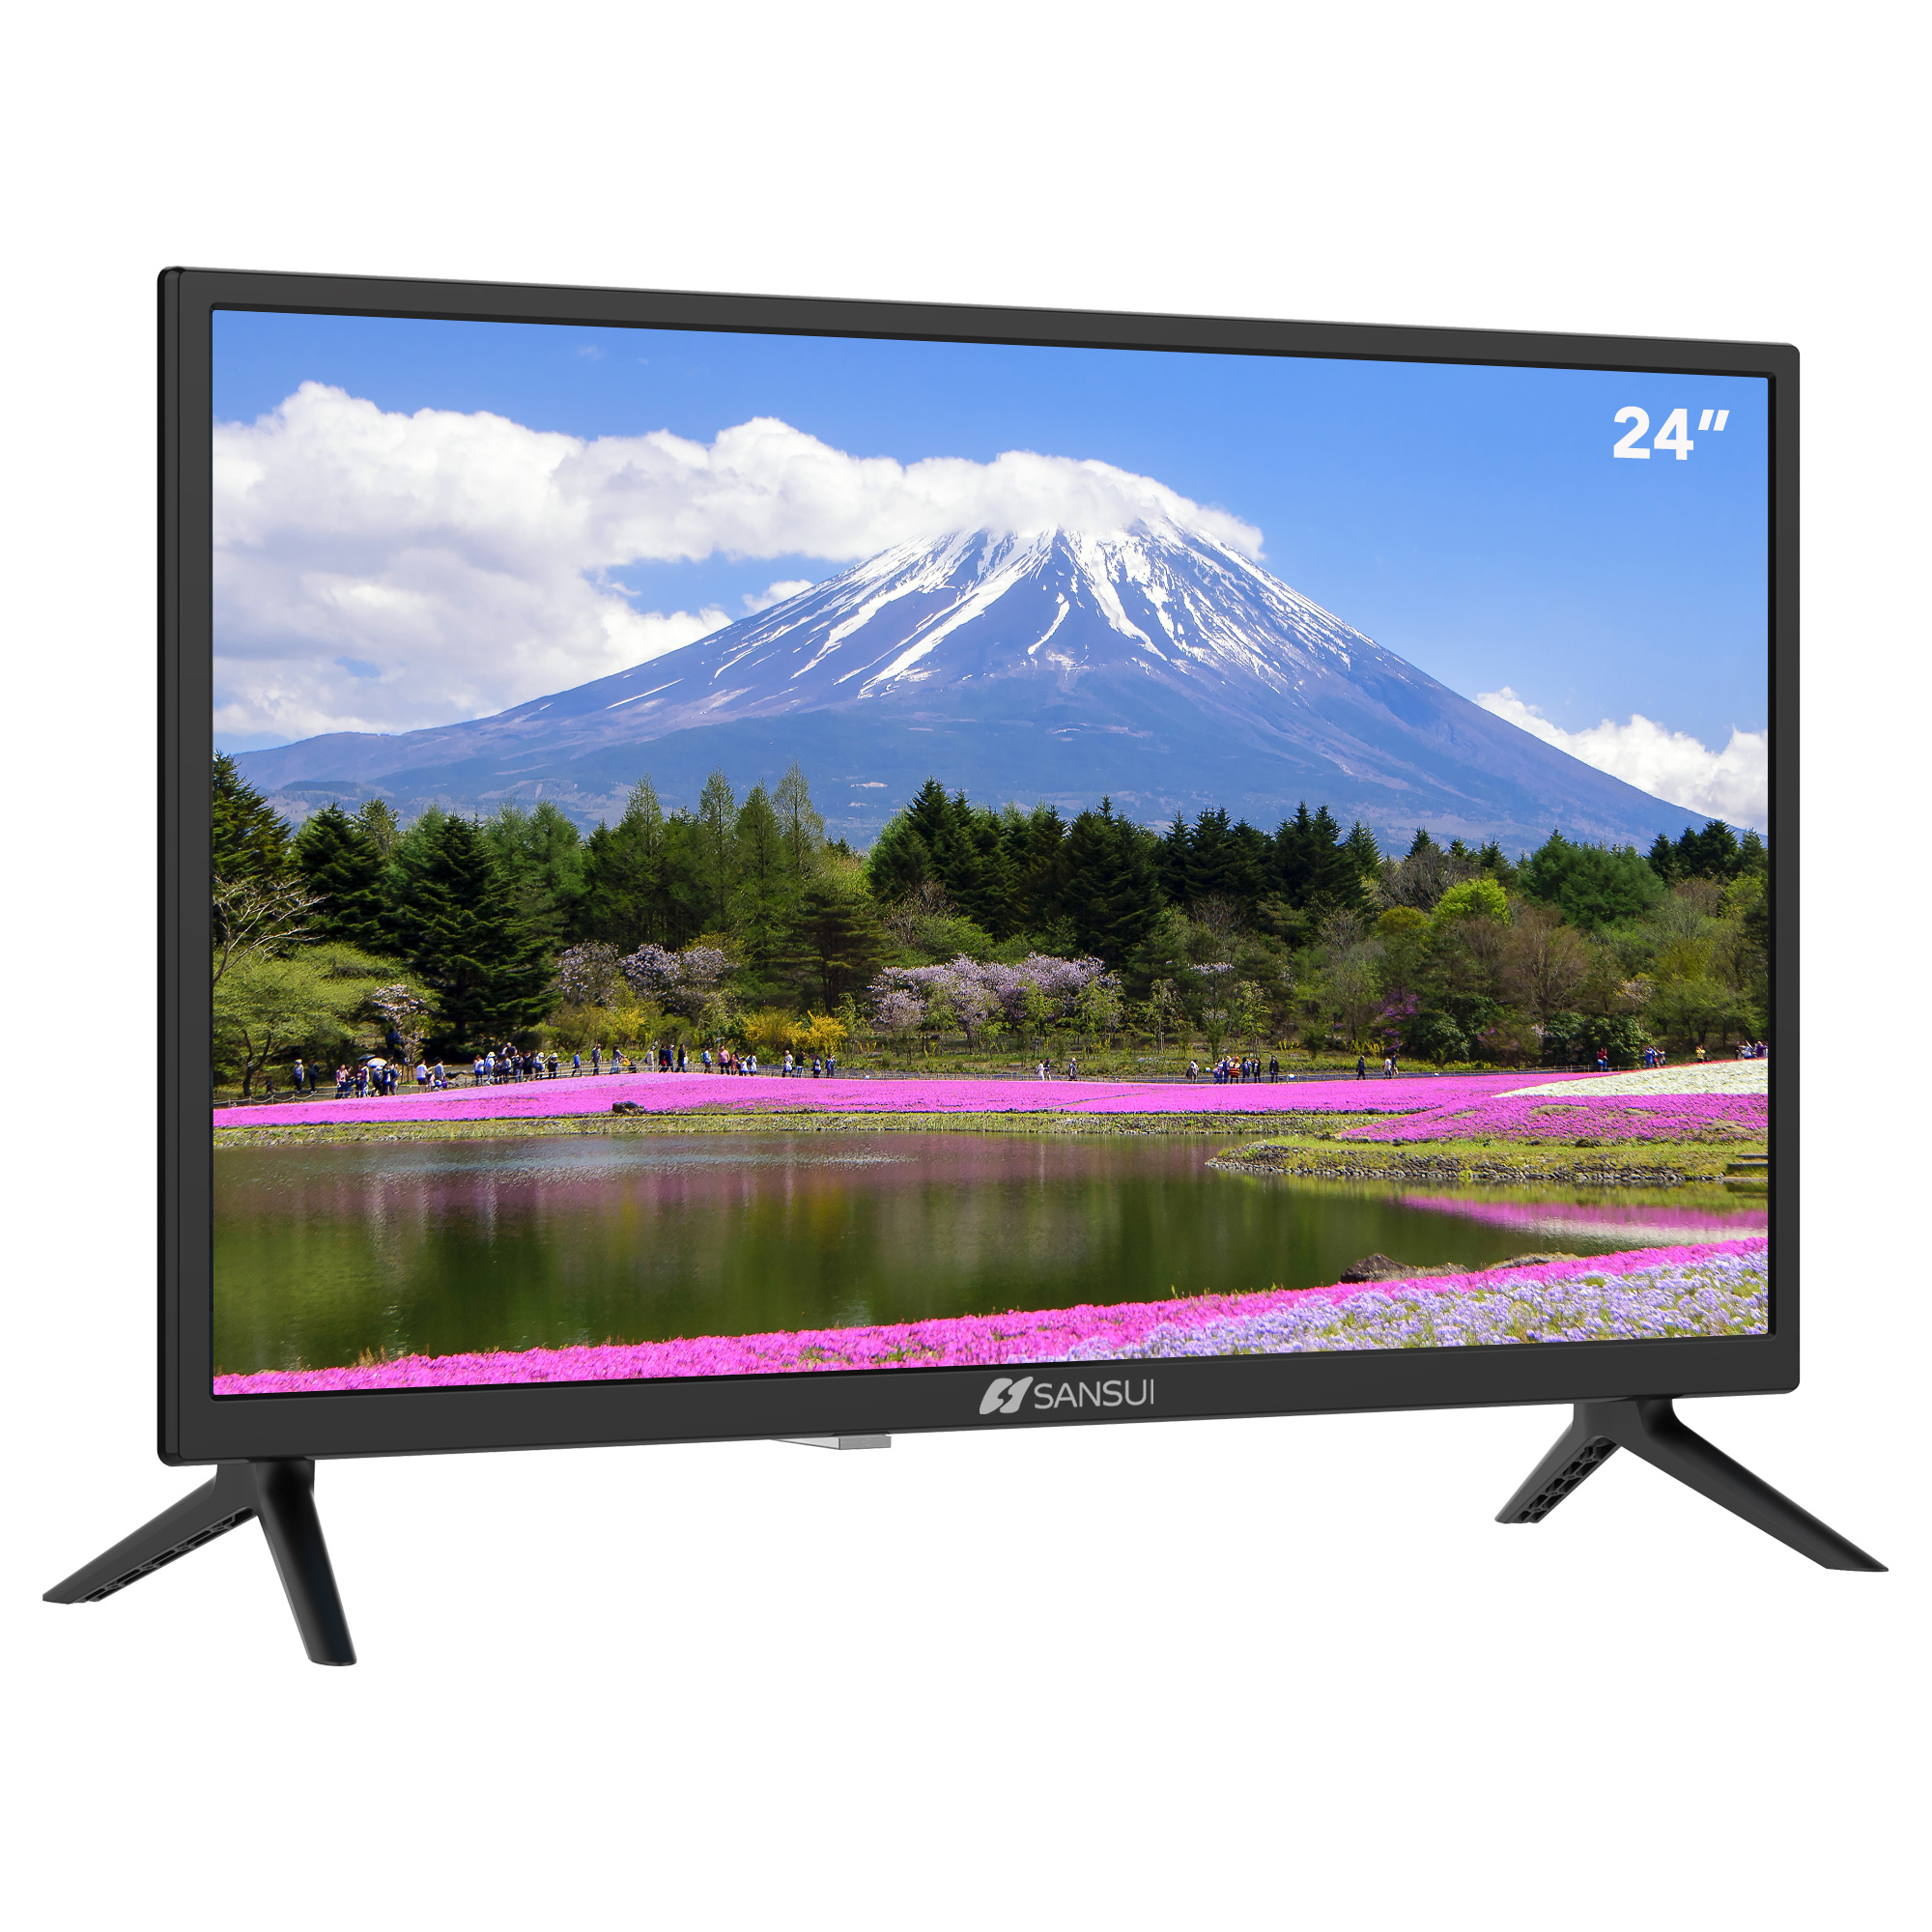 Pantalla SANSUI  24 Smart TV, HD, SMX24T1HN (Reacondicionado A, Empaque Dañado)